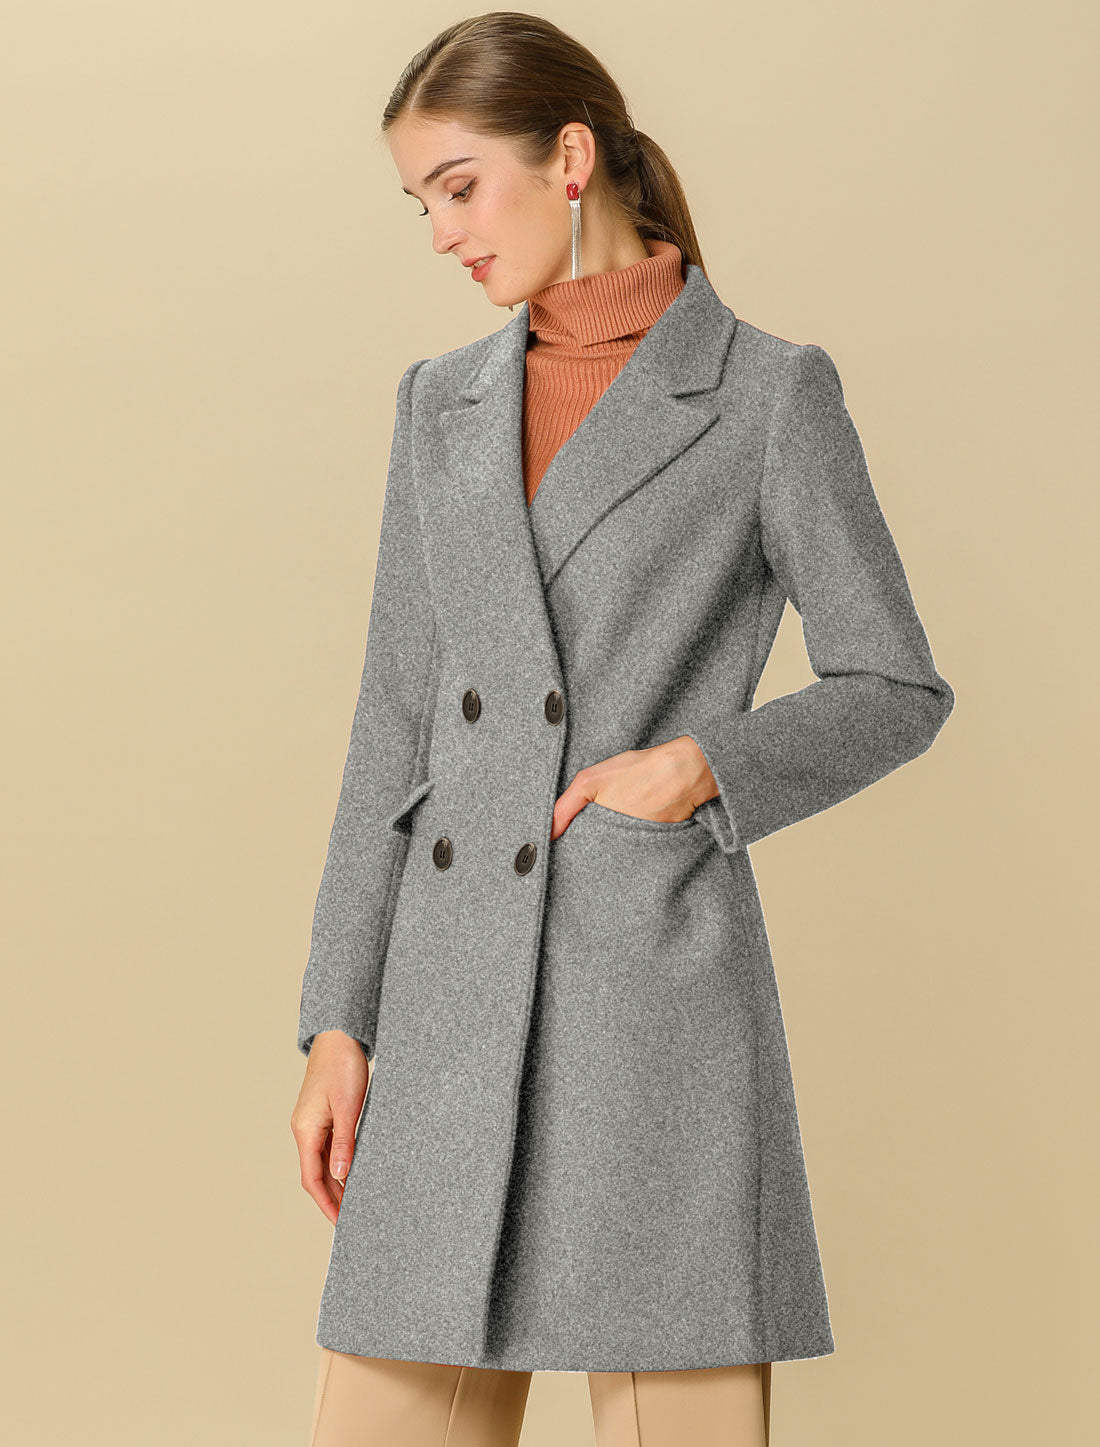 Allegra K Notch Lapel Double Breasted Belted Mid Long Outwear Winter Coat Grey